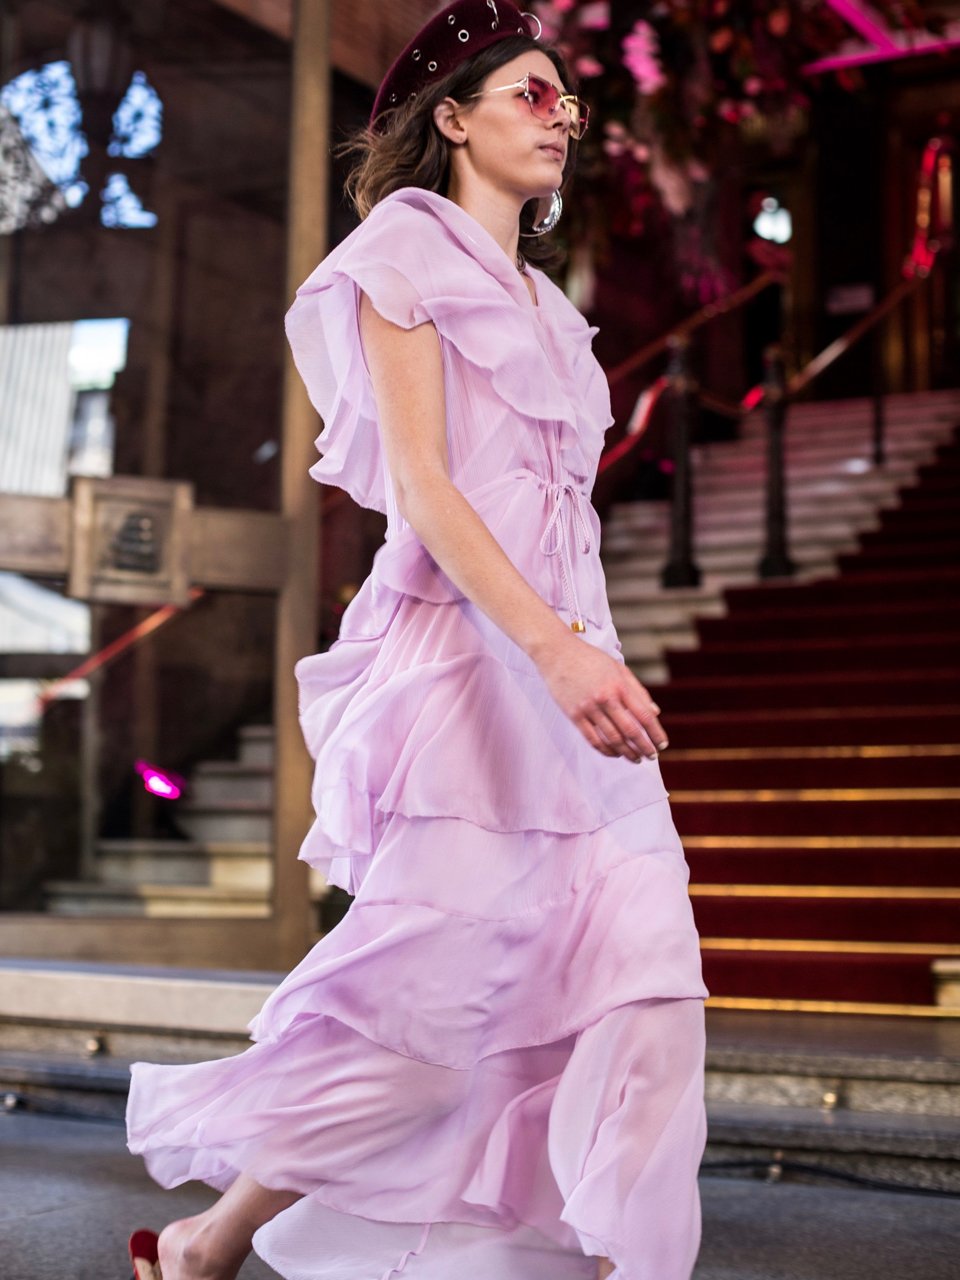 Ethical Clothing Showcase at Melbourne Fashion Week